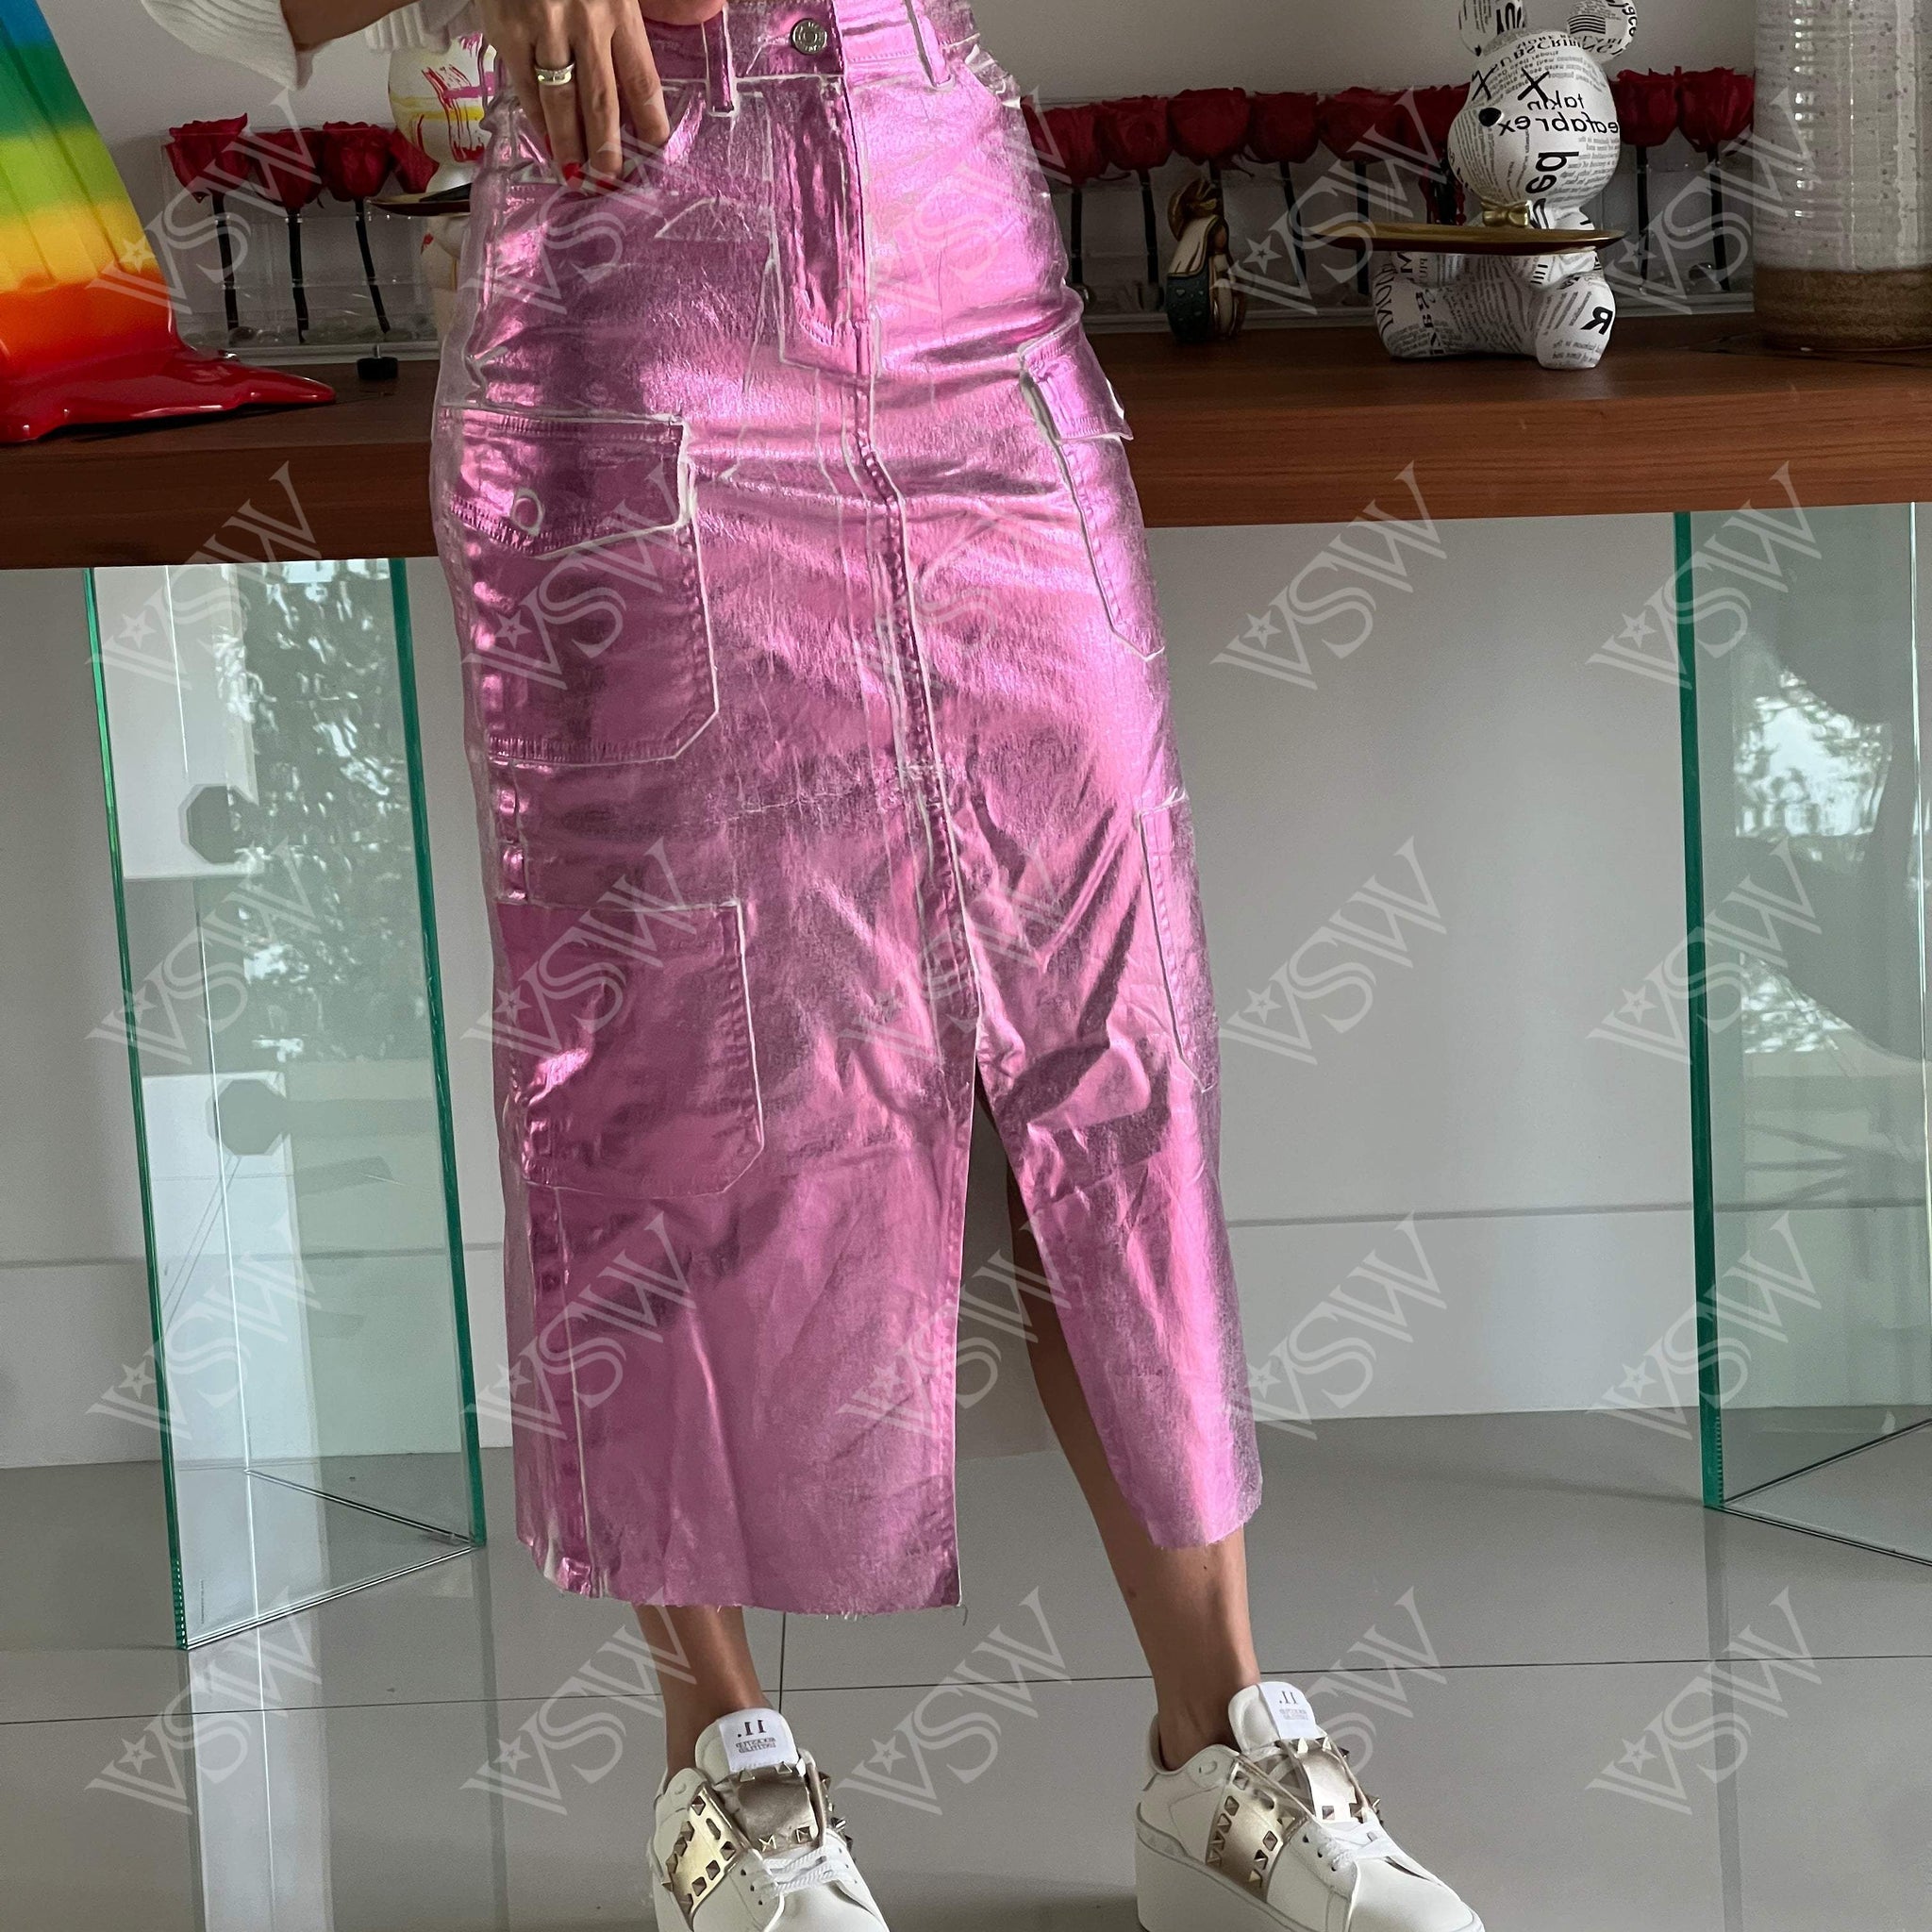 Skirt Meta Rainbow - Skirt from [store] by LA - women skirt